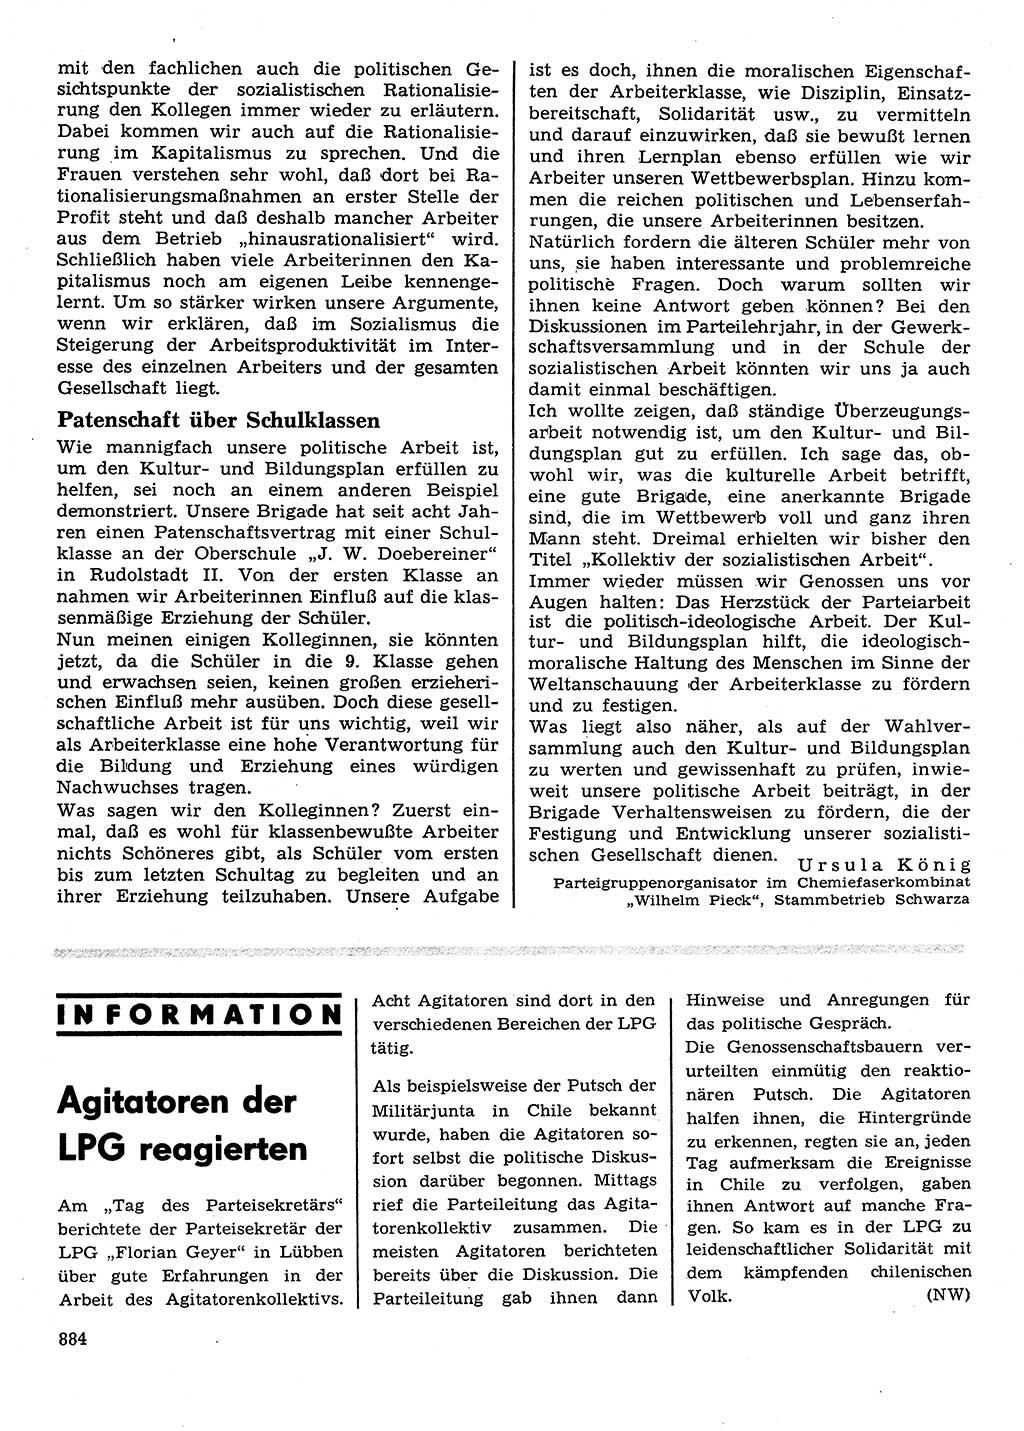 Neuer Weg (NW), Organ des Zentralkomitees (ZK) der SED (Sozialistische Einheitspartei Deutschlands) für Fragen des Parteilebens, 28. Jahrgang [Deutsche Demokratische Republik (DDR)] 1973, Seite 884 (NW ZK SED DDR 1973, S. 884)